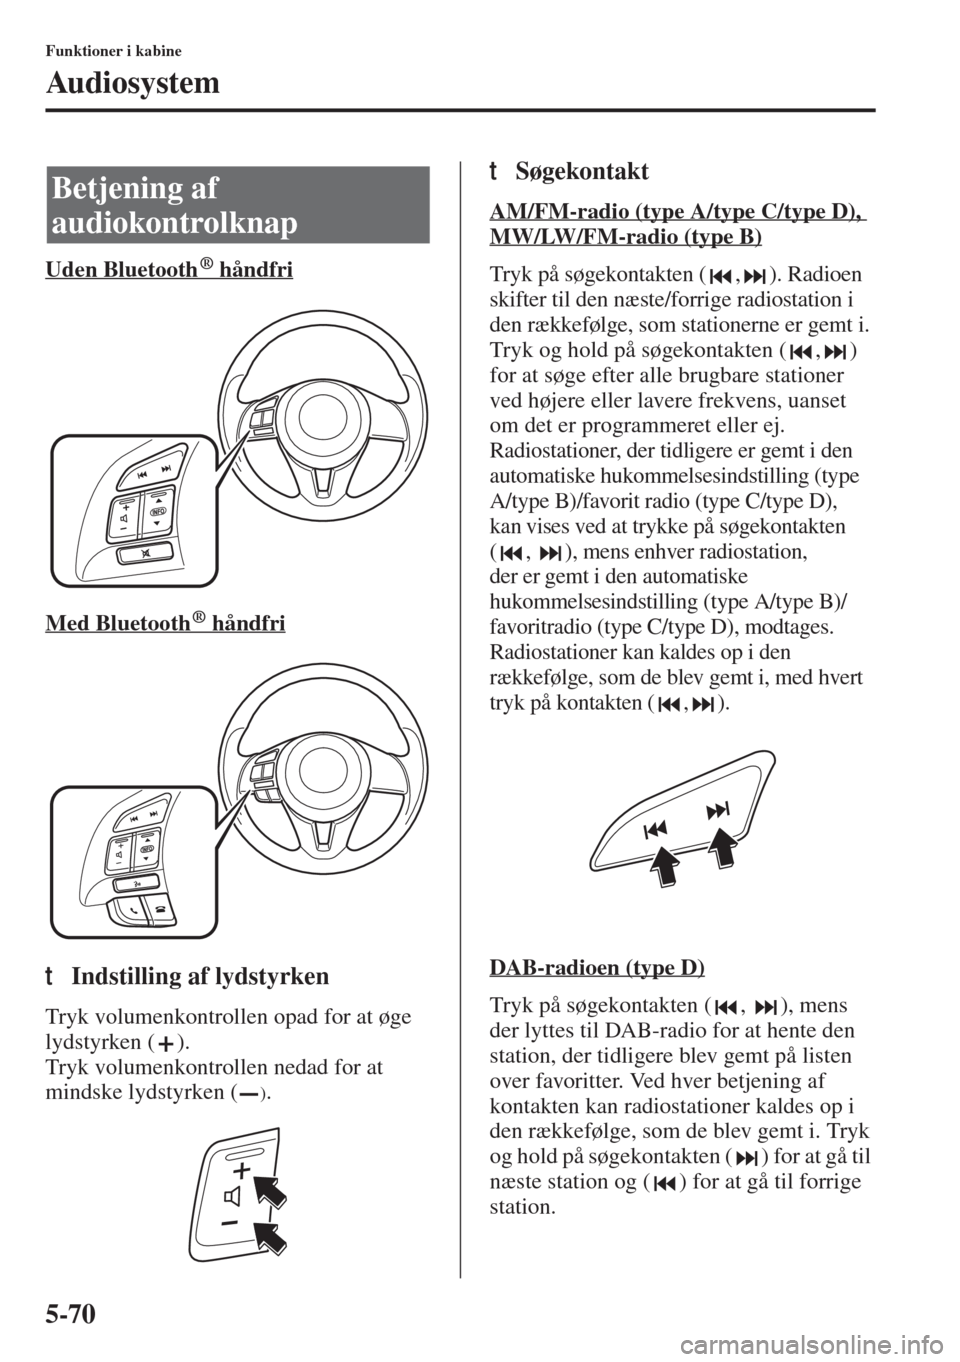 MAZDA MODEL 6 2015  Instruktionsbog (in Danish) 5-70
Funktioner i kabine
Audiosystem
Uden Bluetooth  håndfri
Med Bluetooth  håndfri
tIndstilling af lydstyrken
Tryk volumenkontrollen opad for at øge 
lydstyrken ( ).
Tryk volumenkontrollen nedad f